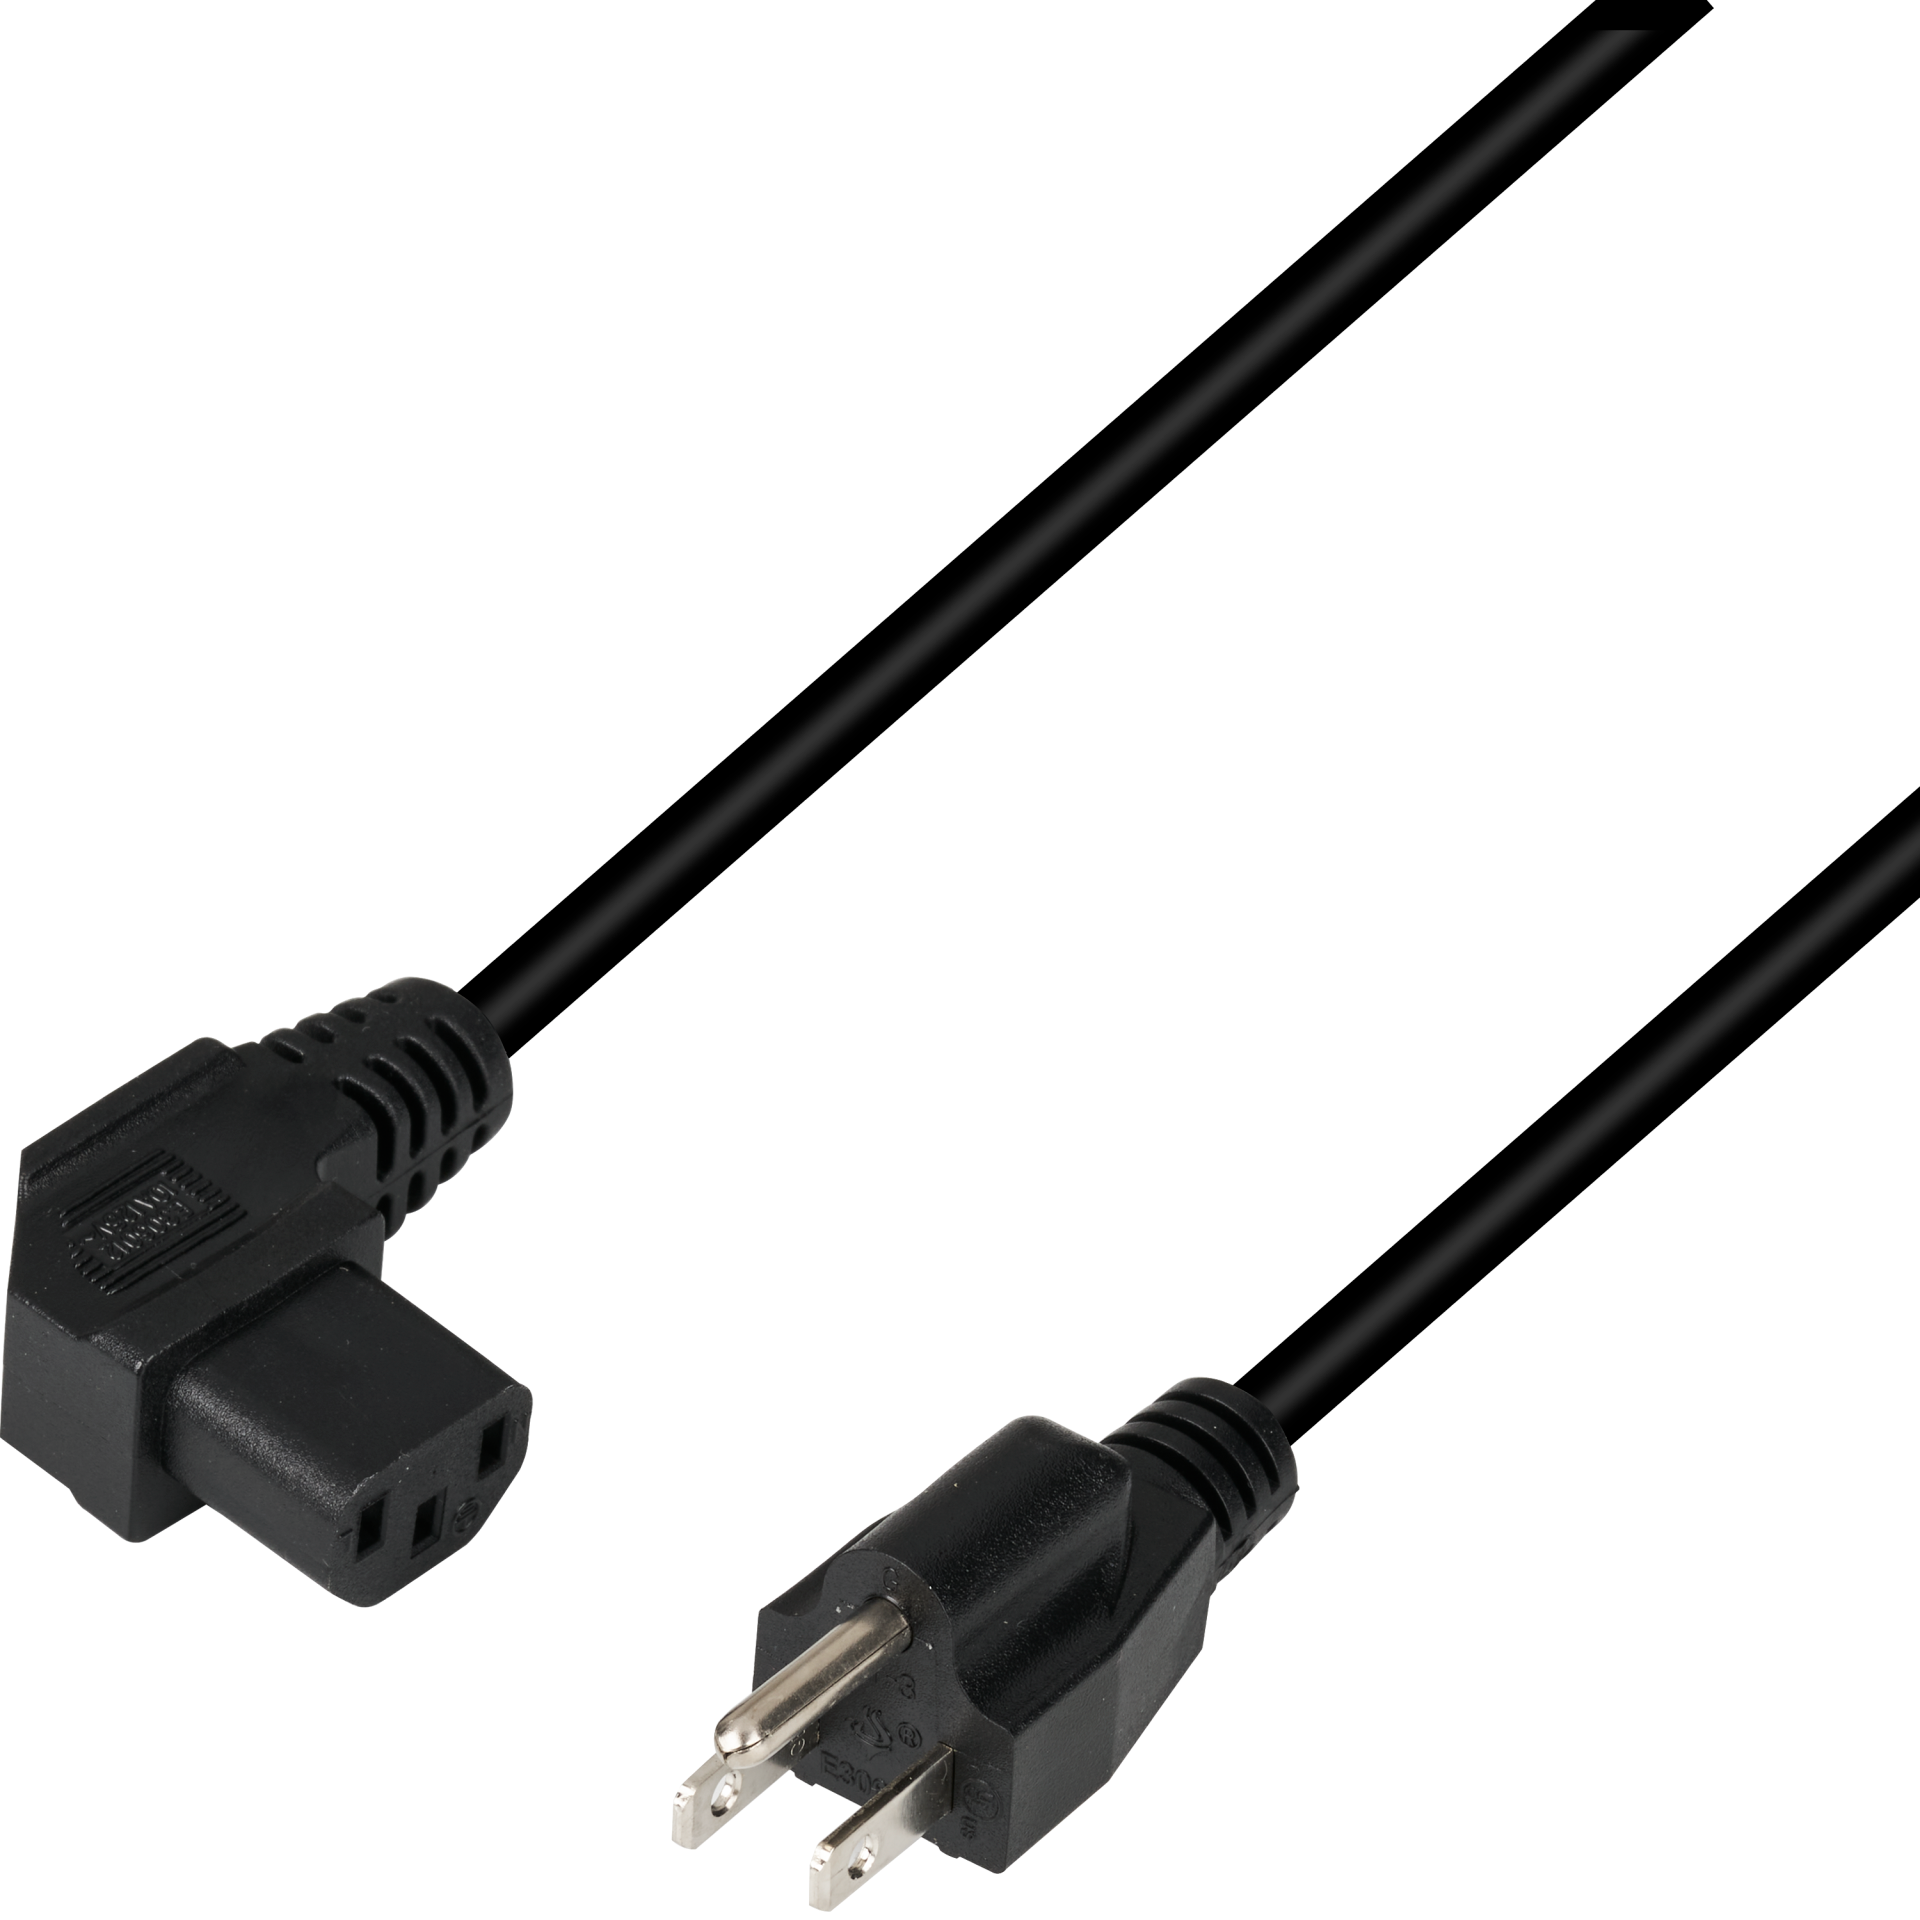 Power Cable USA/NEMA 5-15P - C13 90°, Black, 1.8 m, SVT AWG18 x 3C